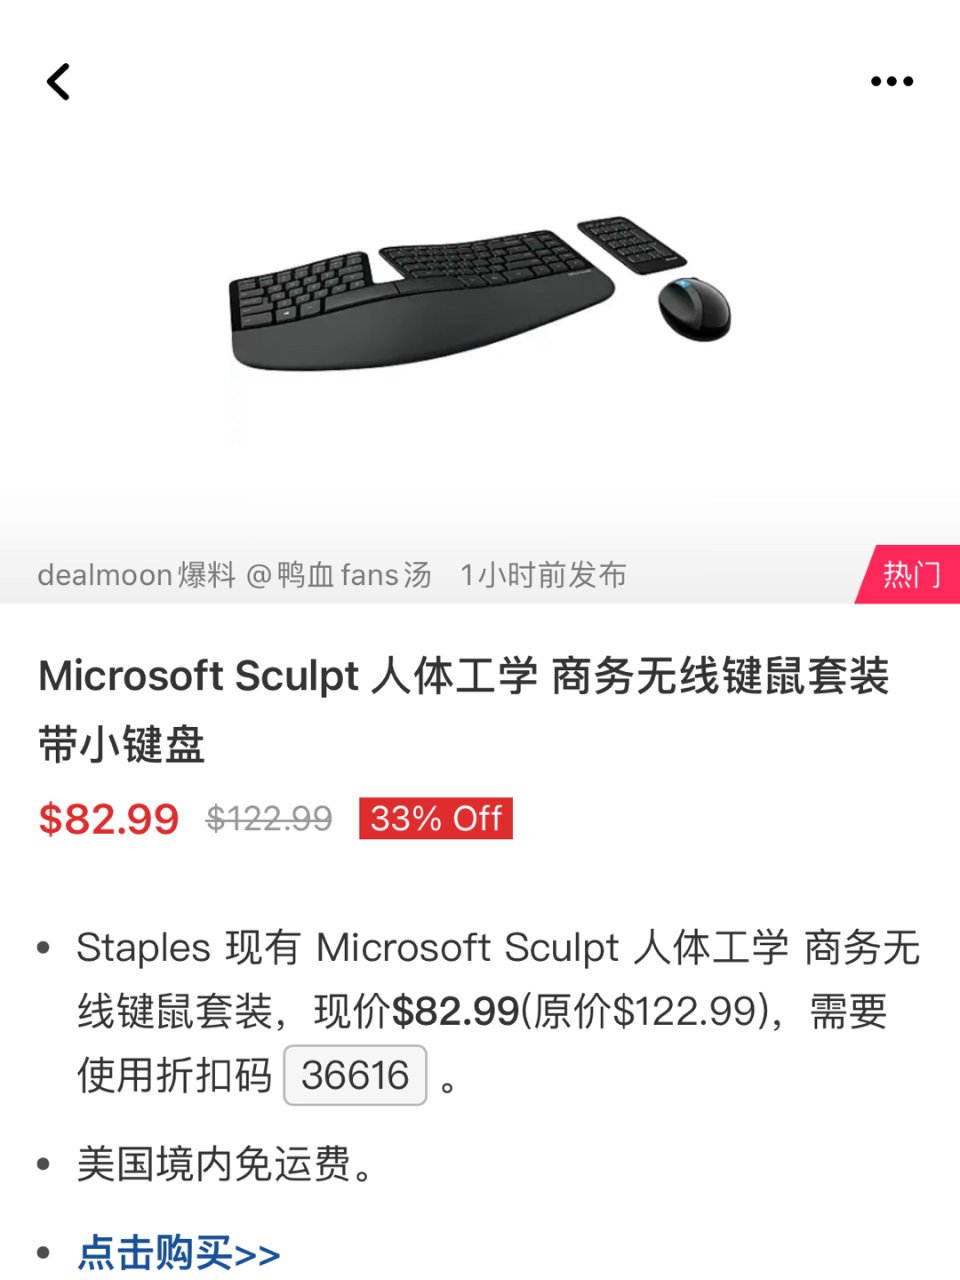 超级好用的微软人体工学键盘鼠标...